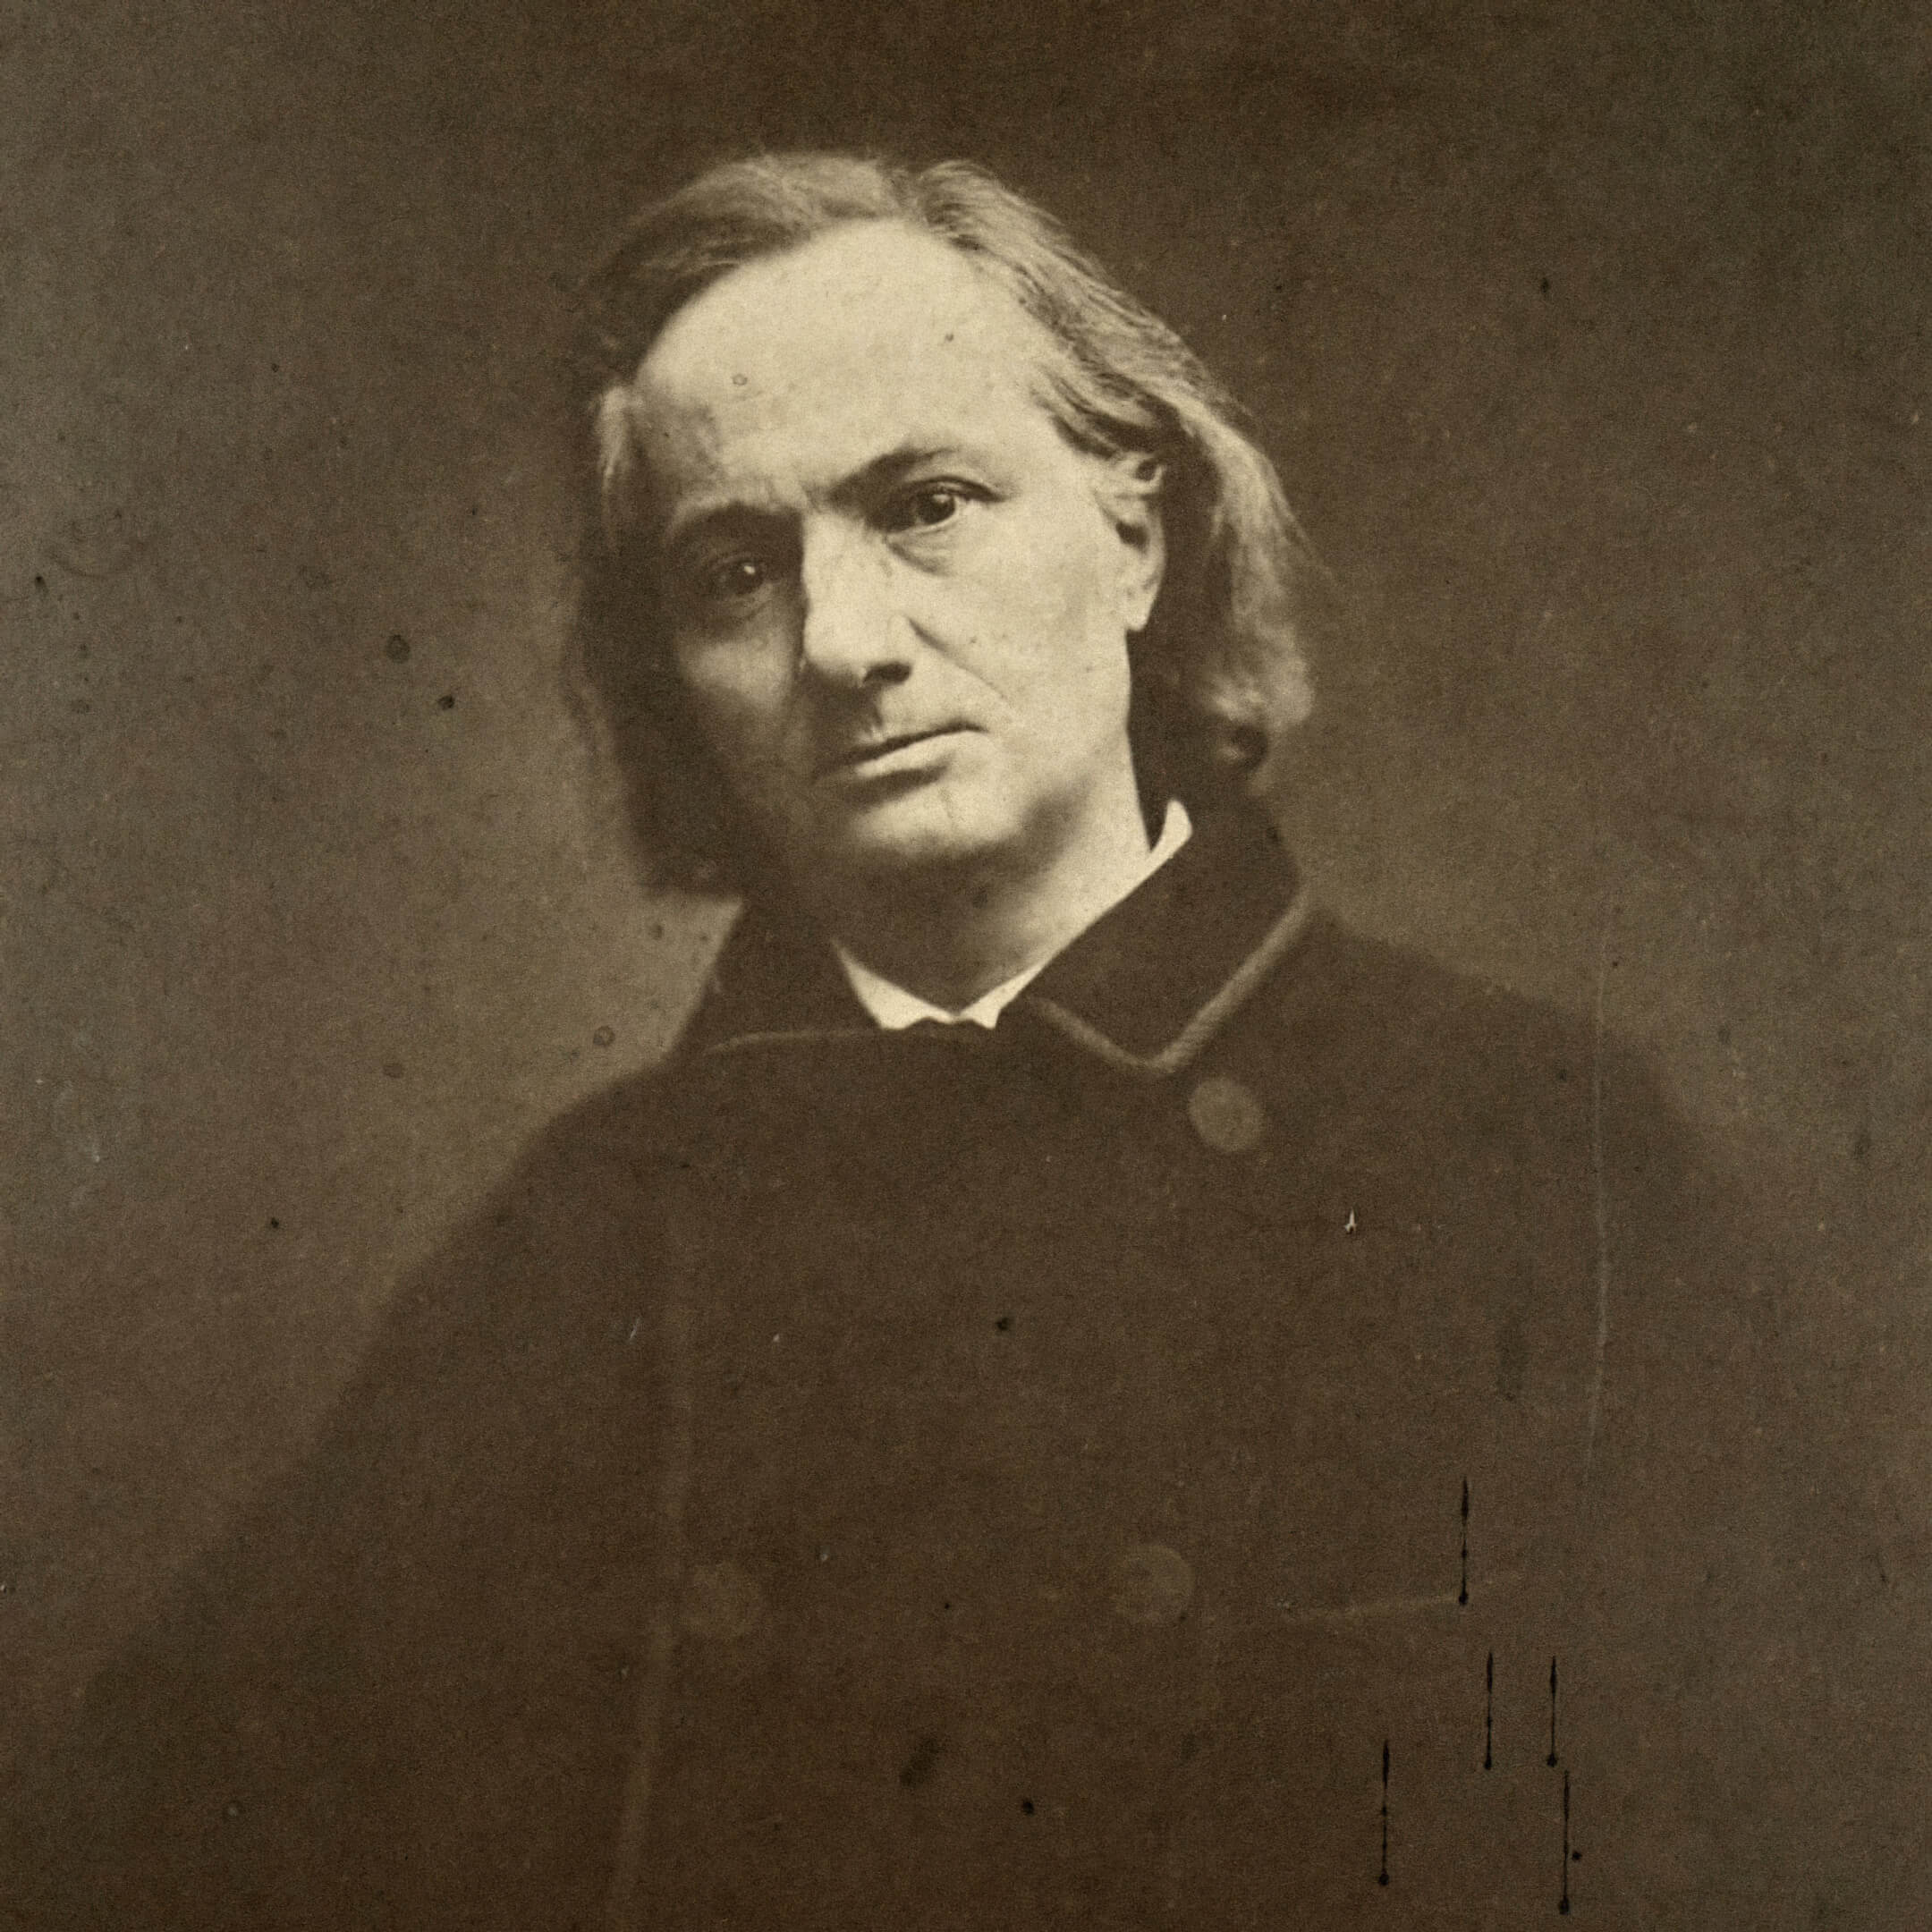 Шарль Бодлер в 1865 году, последнее фото перед его смертью. Фотограф: Étienne Carjat. Источник: commons.wikimedia.org  